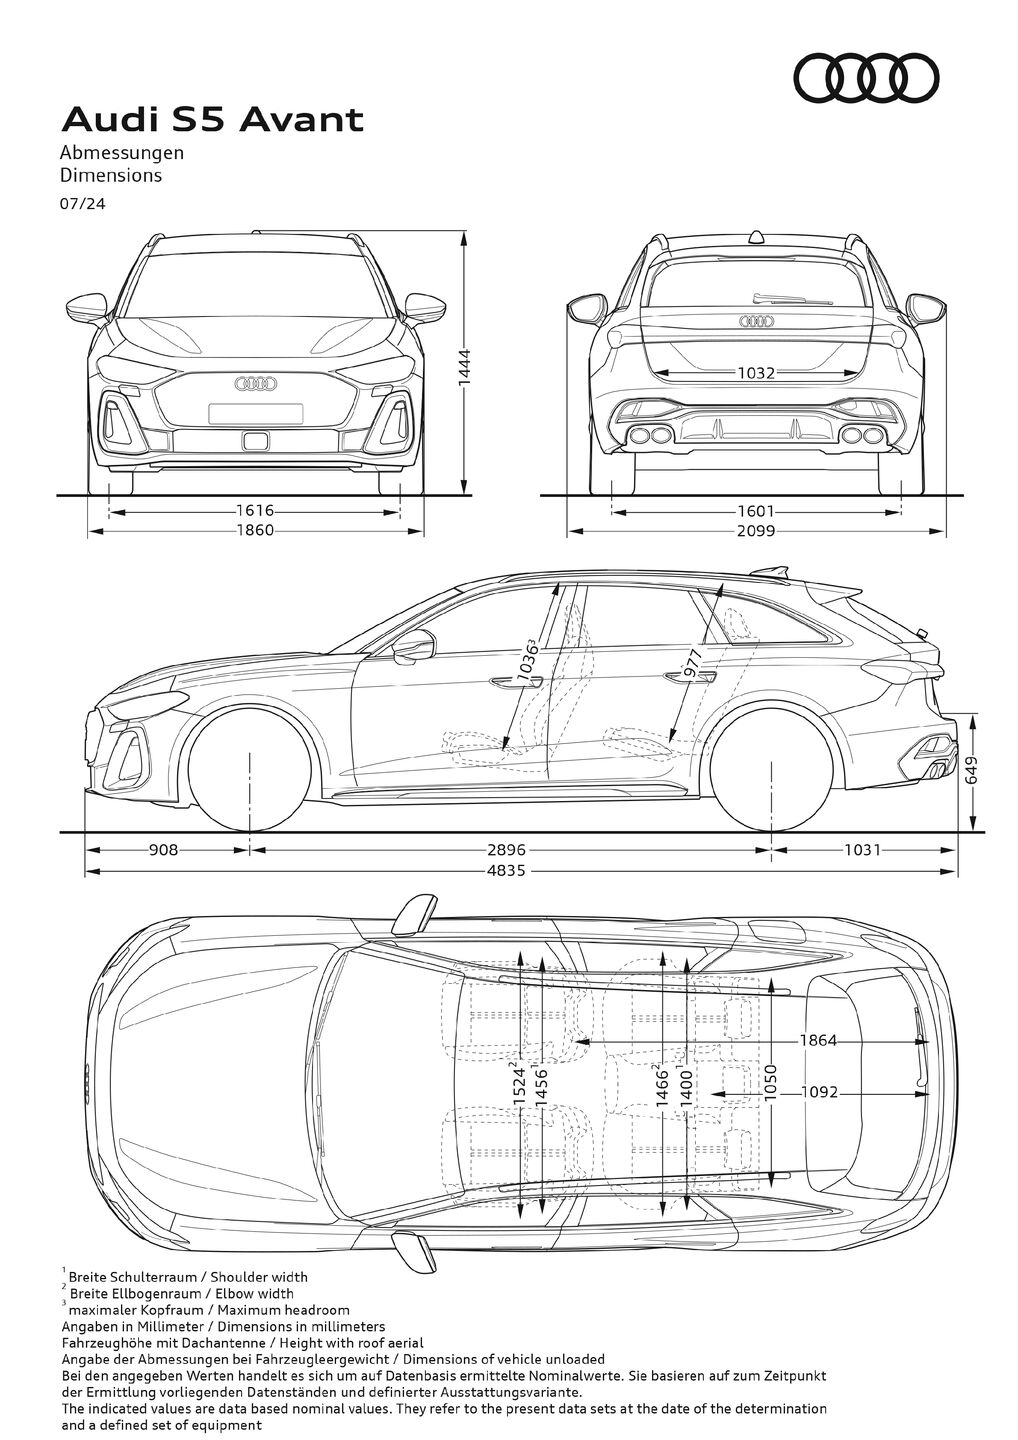 Abmessungen Audi S5 Avant